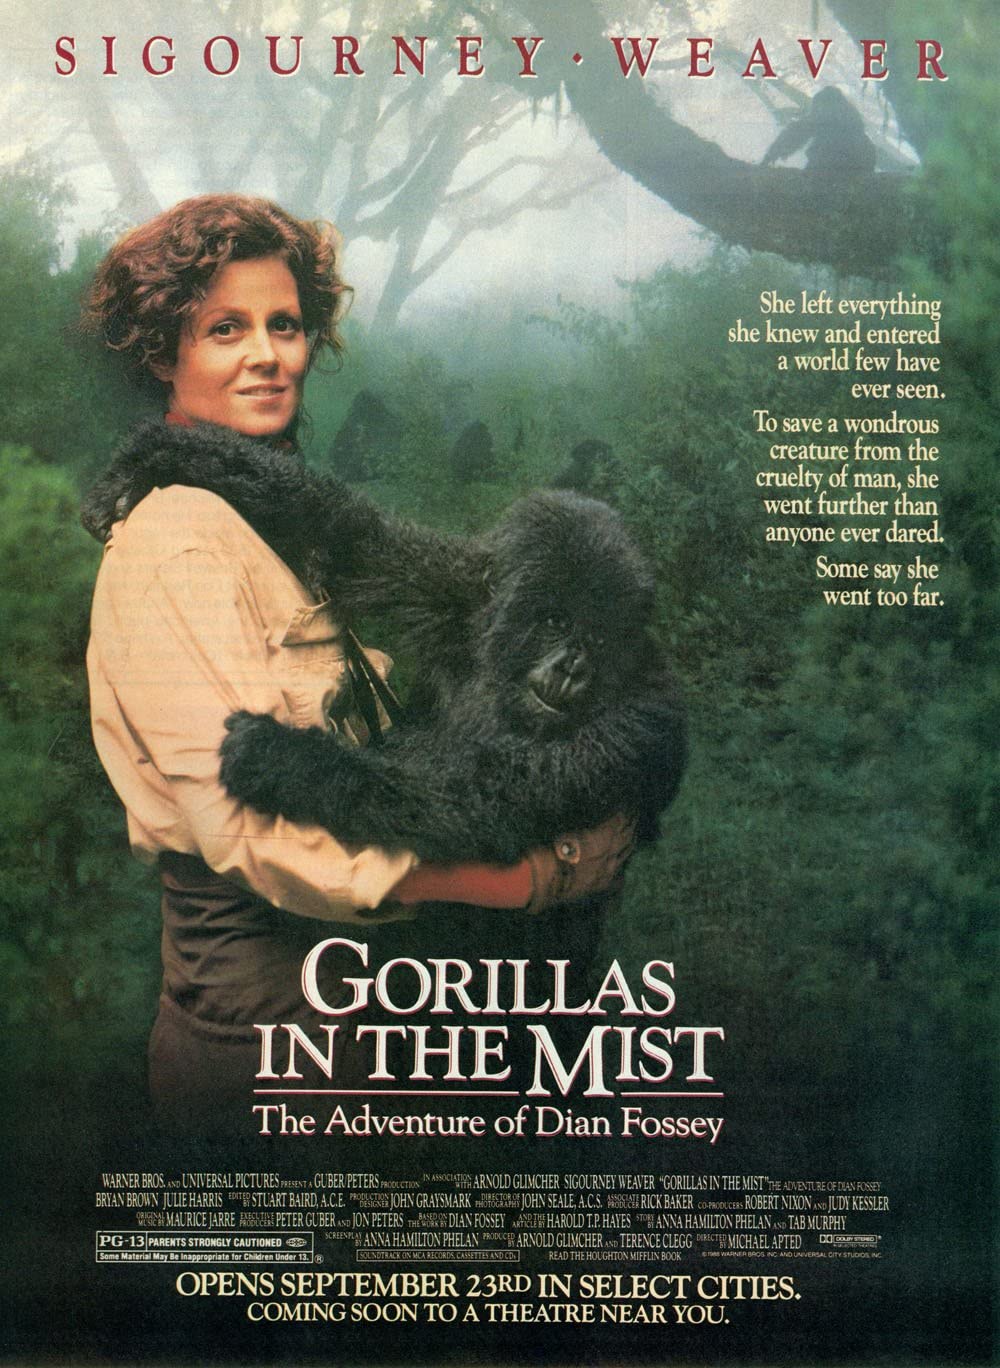 Filmbeschreibung zu Gorillas im Nebel